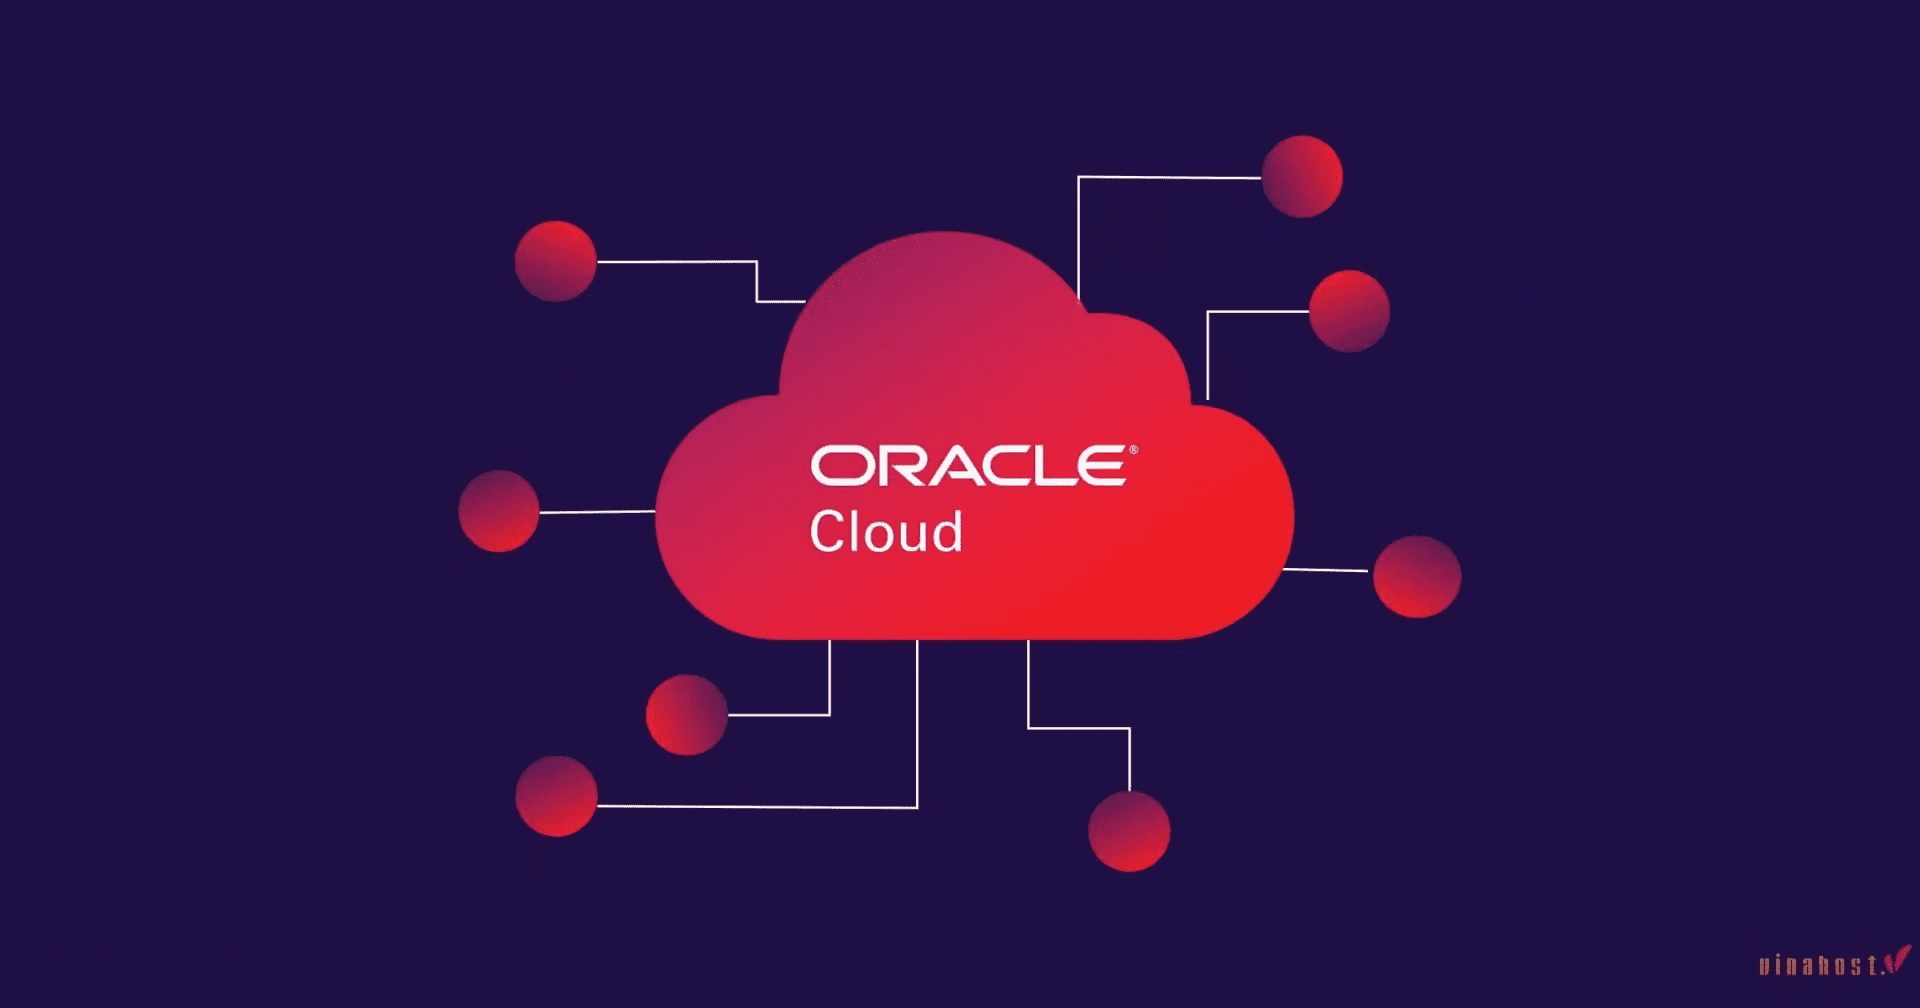  Phần mềm Oracle có khả năng xử lý các dữ liệu, thông tin mạnh mẽ